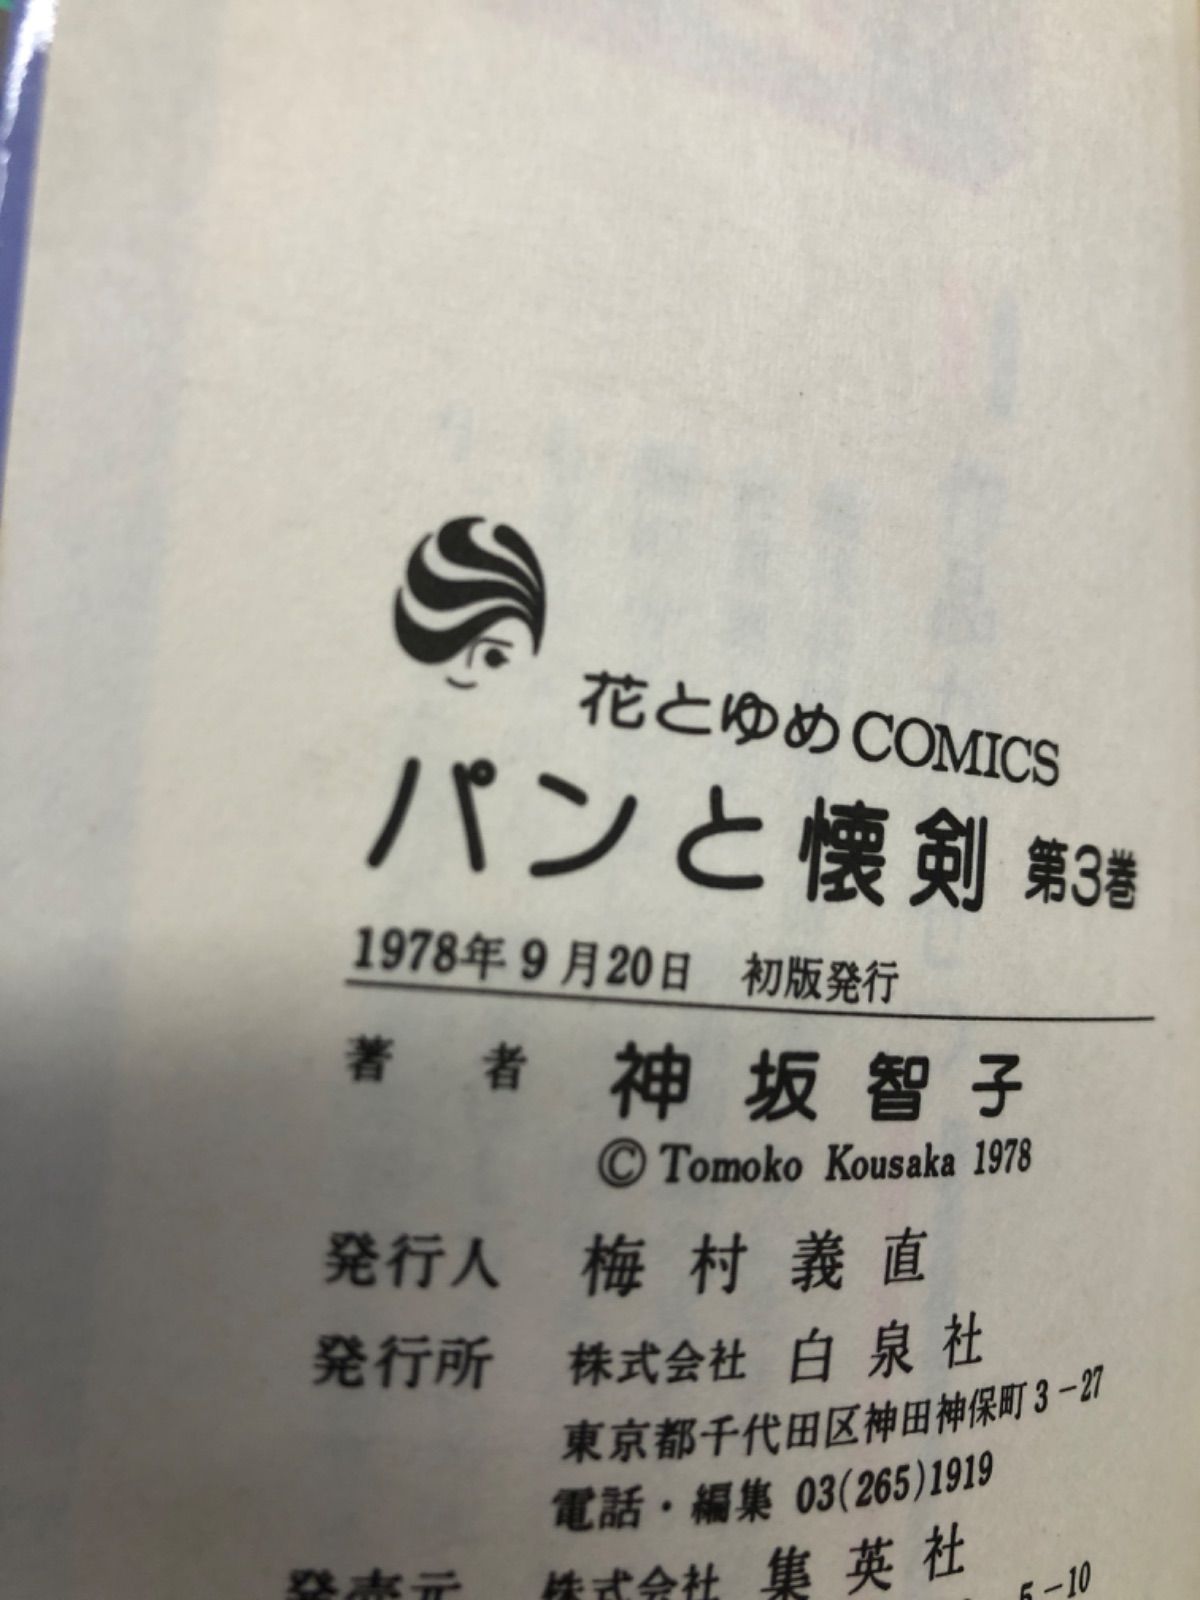 パンと懐剣 神坂智子 2〜6 花とゆめコミックス 希少 絶版 買い正本 